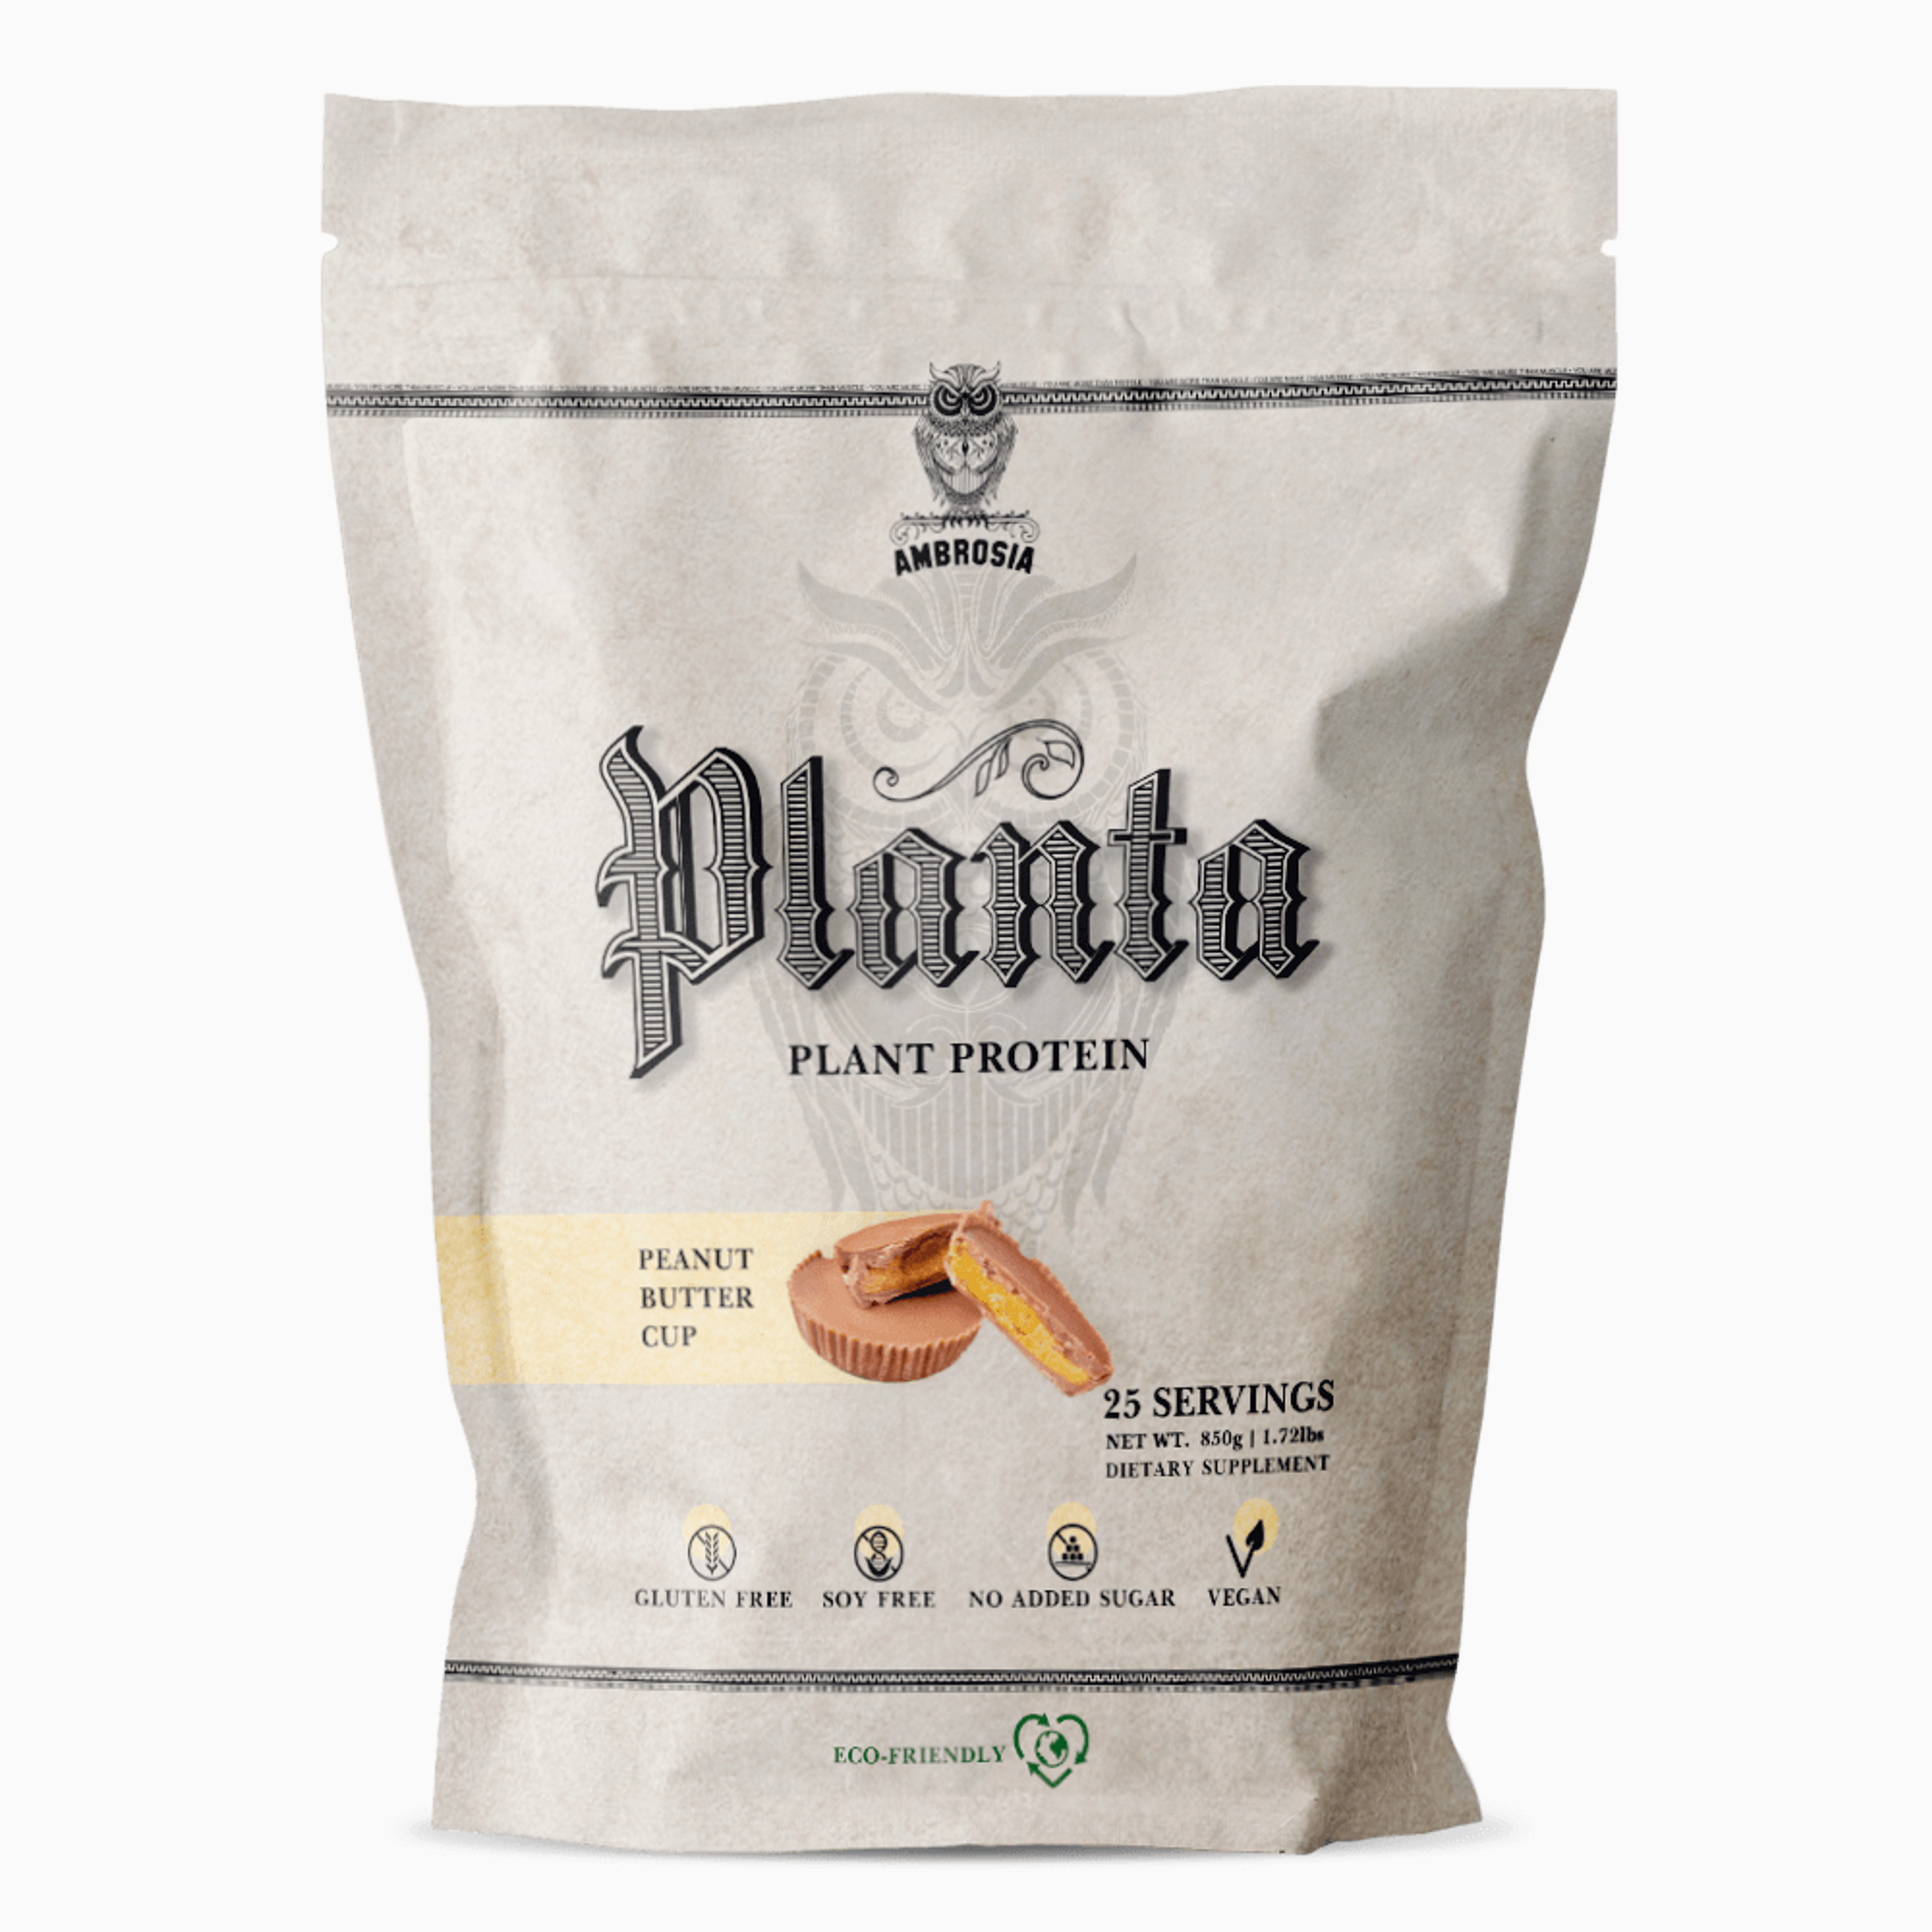 Peanut Butter Cup Ambrosia Planta - Premium Plant Protein